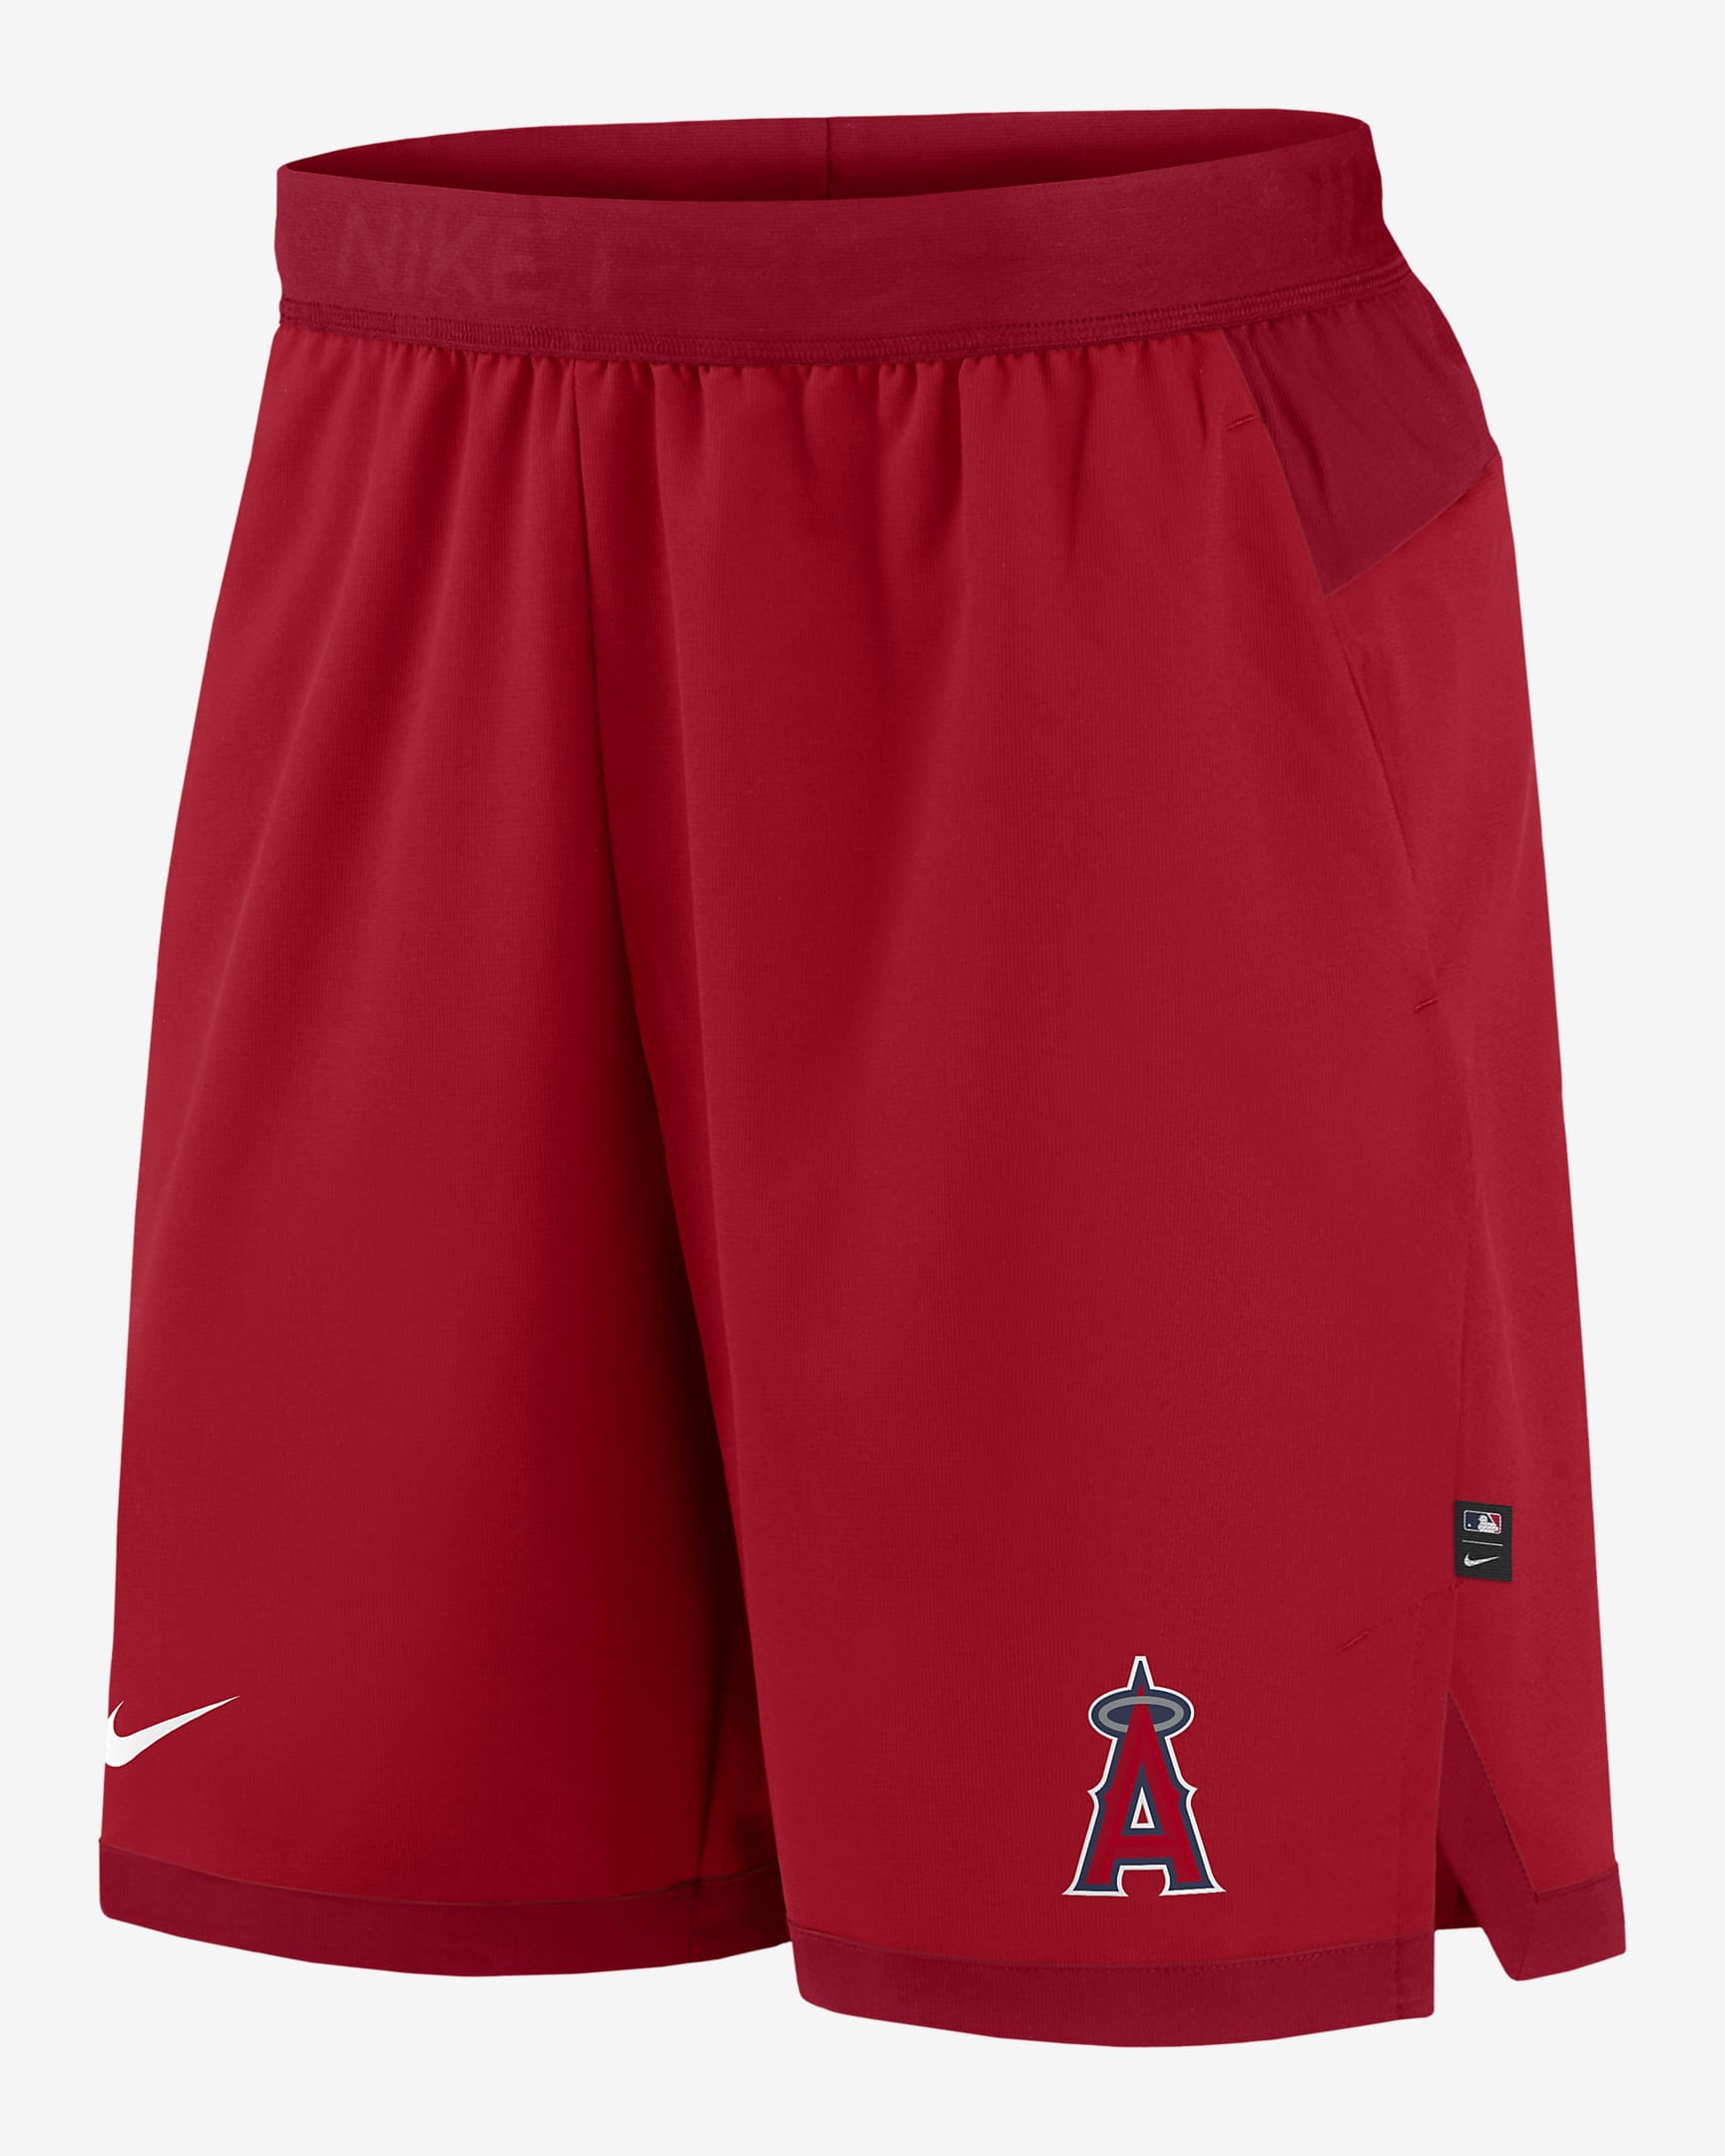 Shorts para hombre Nike Dri-FIT Flex (Los Angeles Angels de MLB). Nike.com